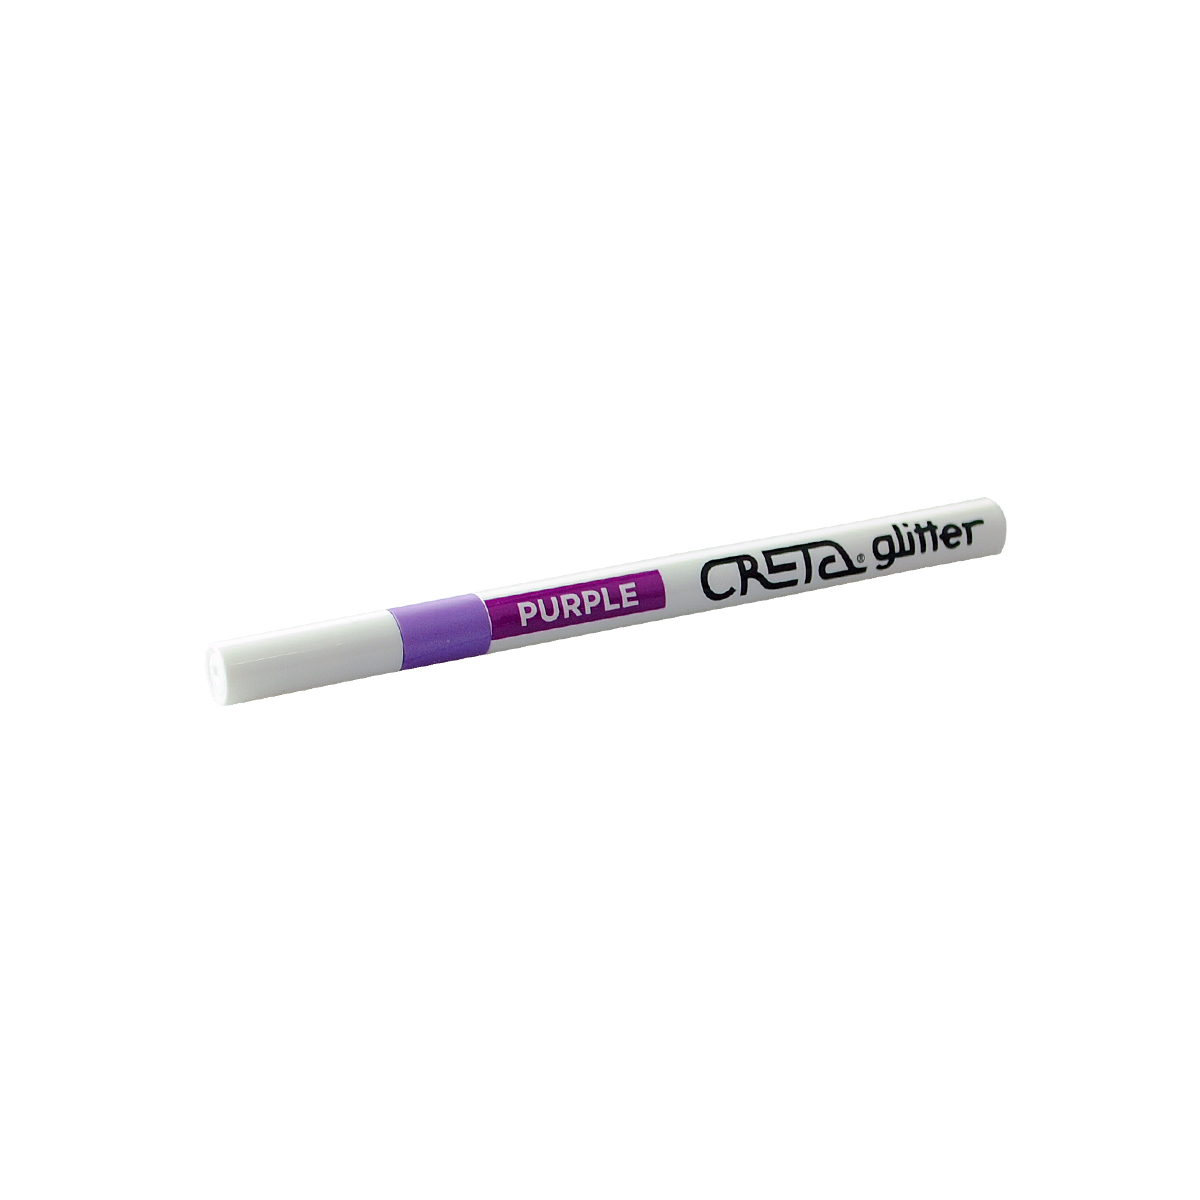 Маркер CRETA glitter 2-3, цвет фиолетовый